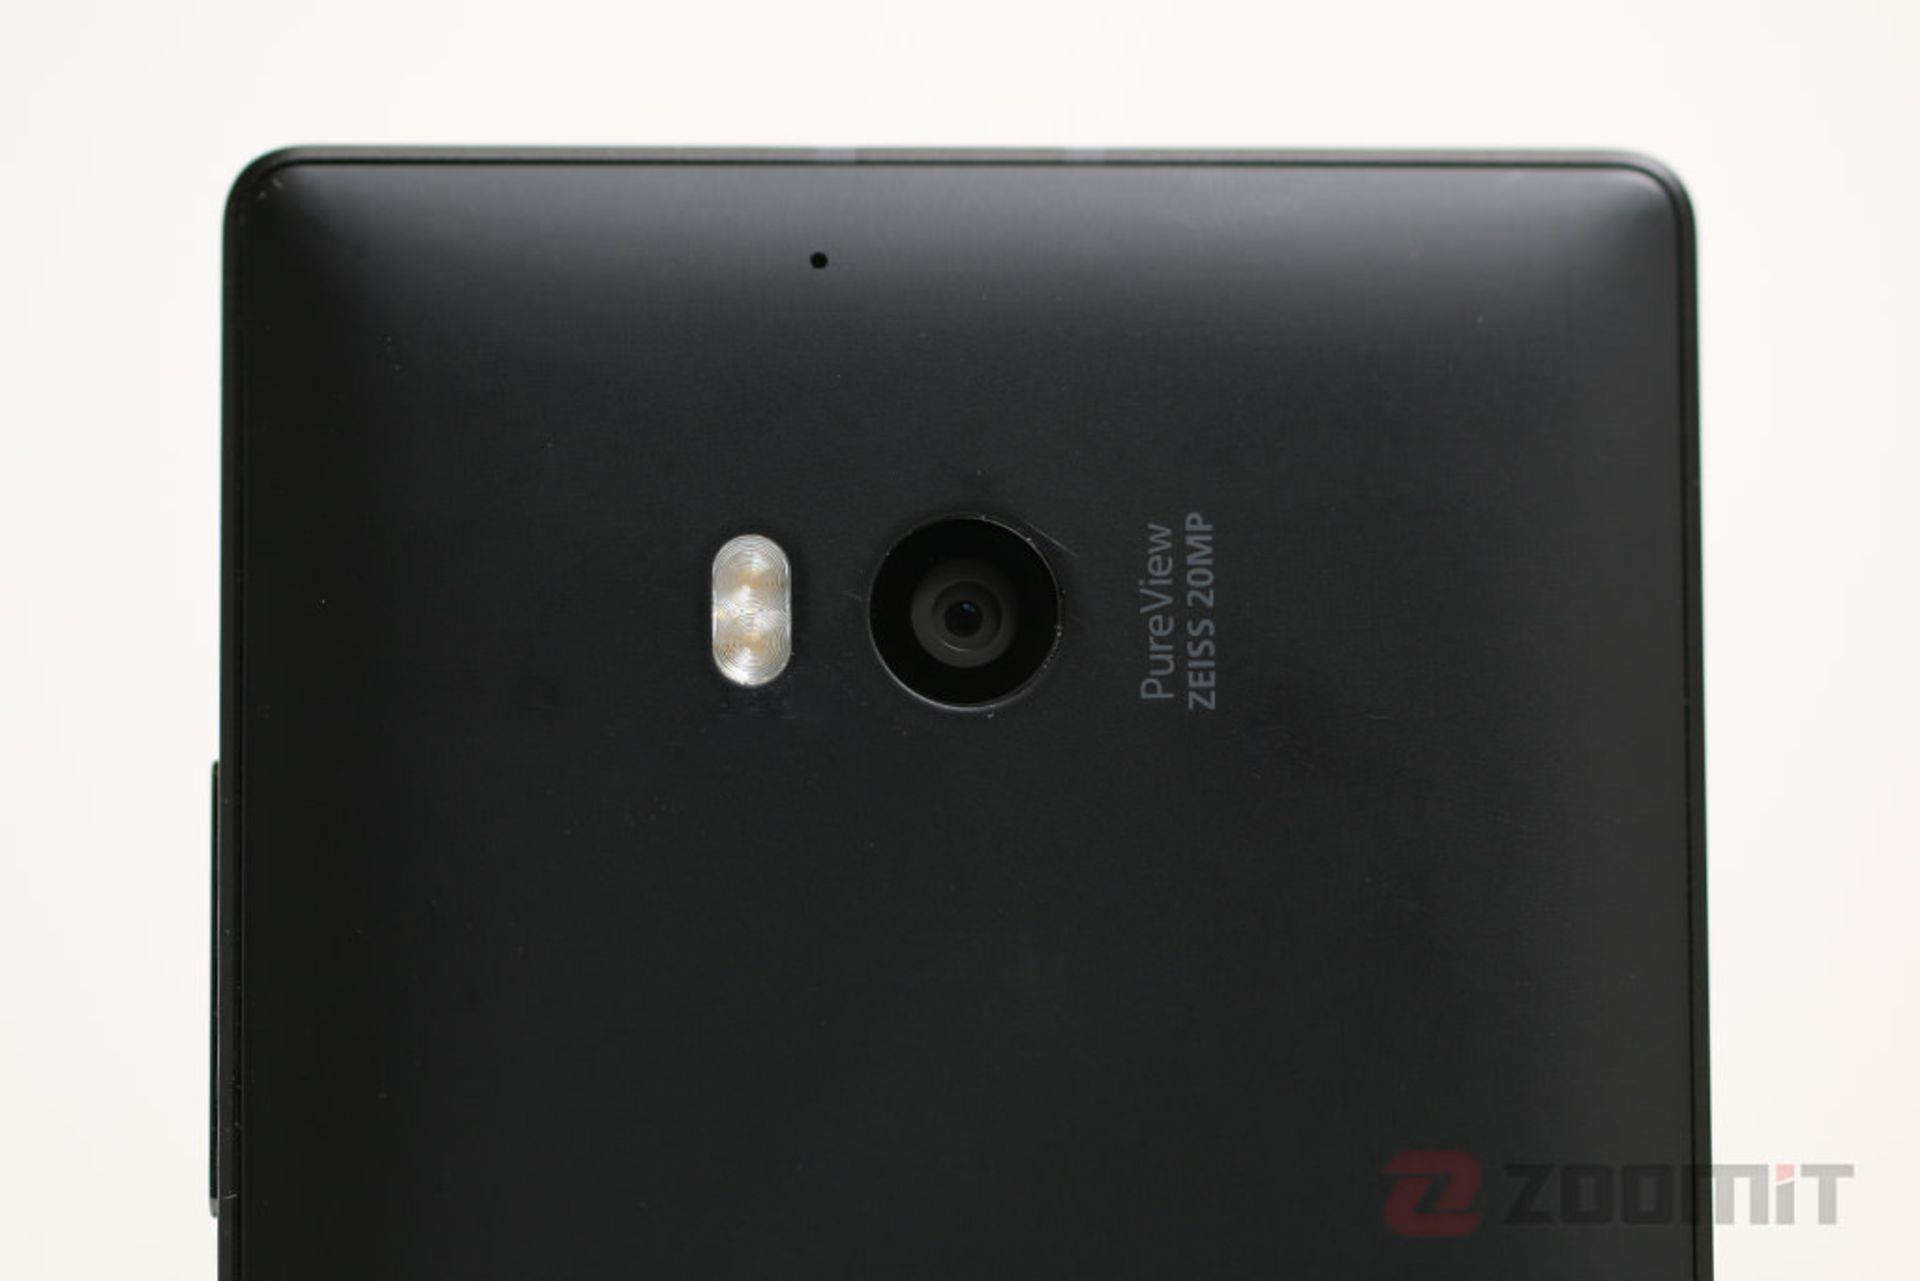 بررسی لومیا 930 نوکیا (Lumia 930)